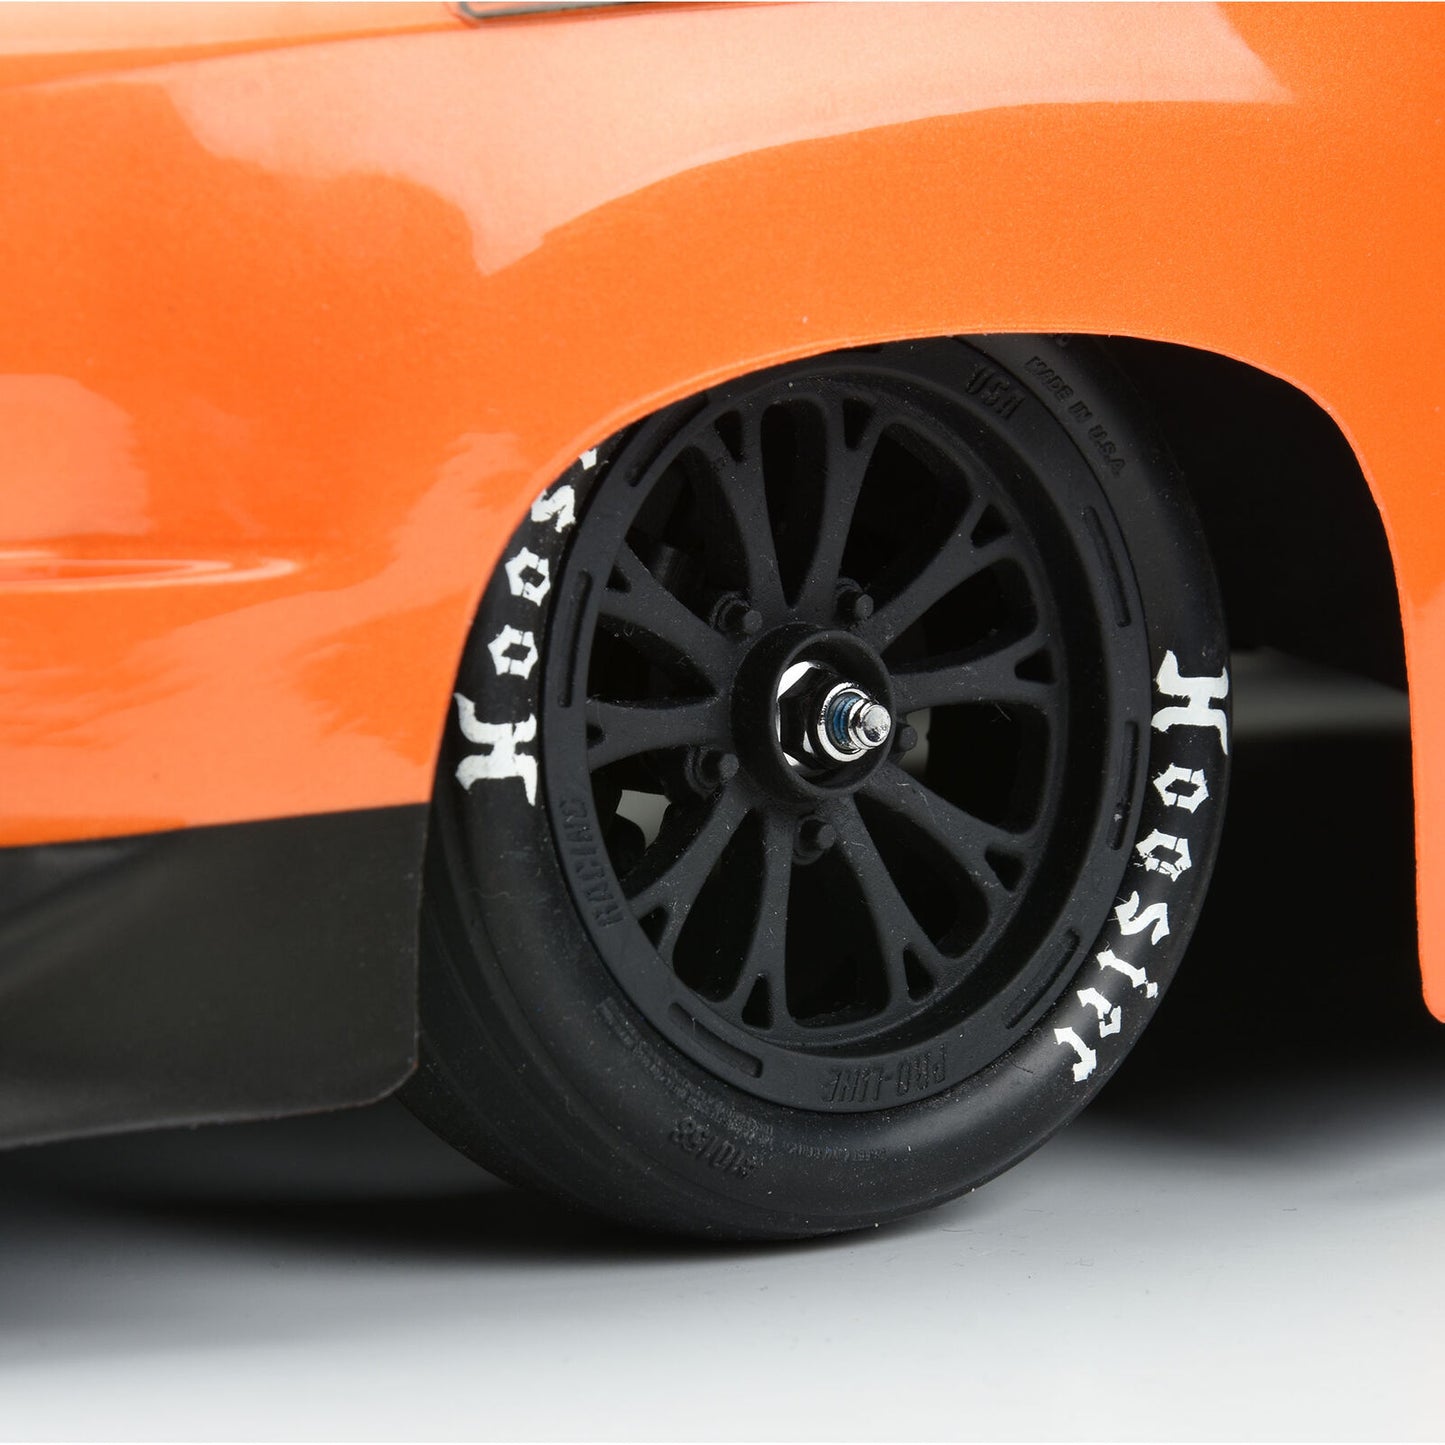 PROLINE RACING 1/10 Hoosier Drag S3 2WD Front 2.2" Drag Racing Tire (2) PRO10158203